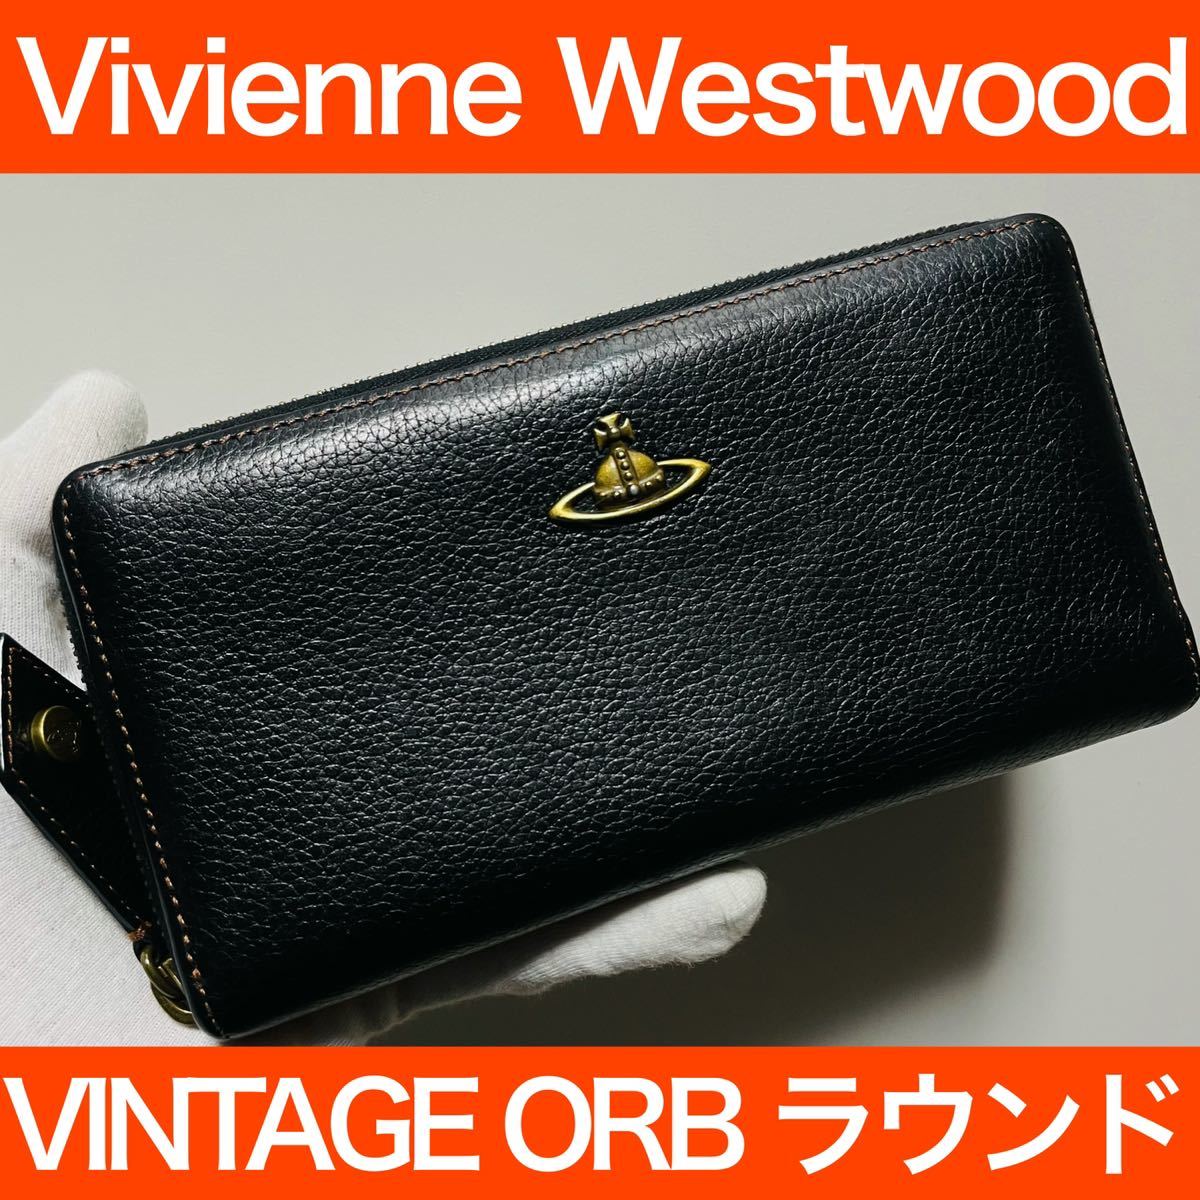 良品 Vivienne Westwood オーブ ラウンドファスナー長財布 - 長財布